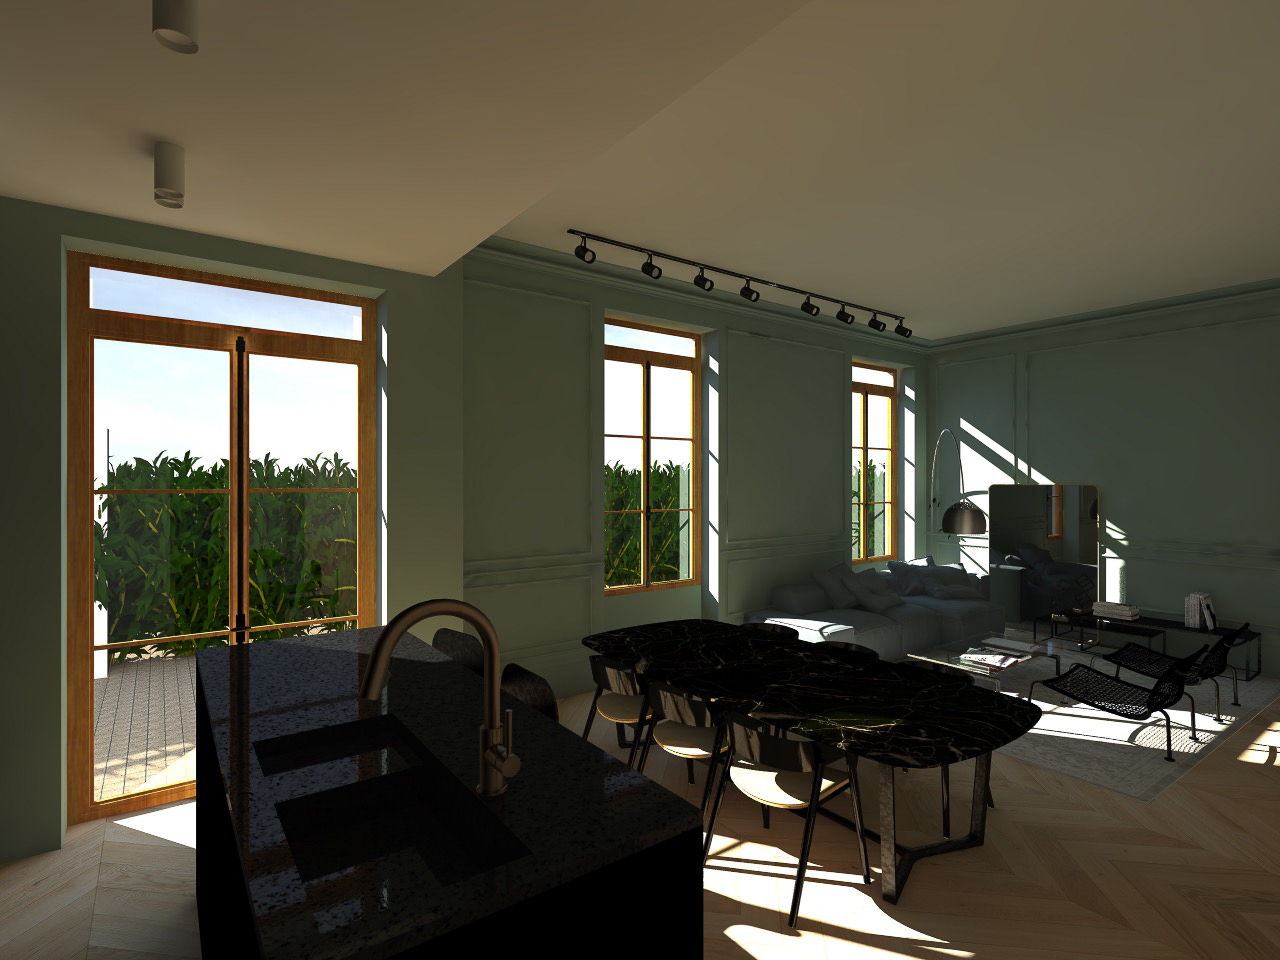 maitre-doeuvre-artisans-renovation-appartement-vaulx-en-velin-amenagement-interieur-2